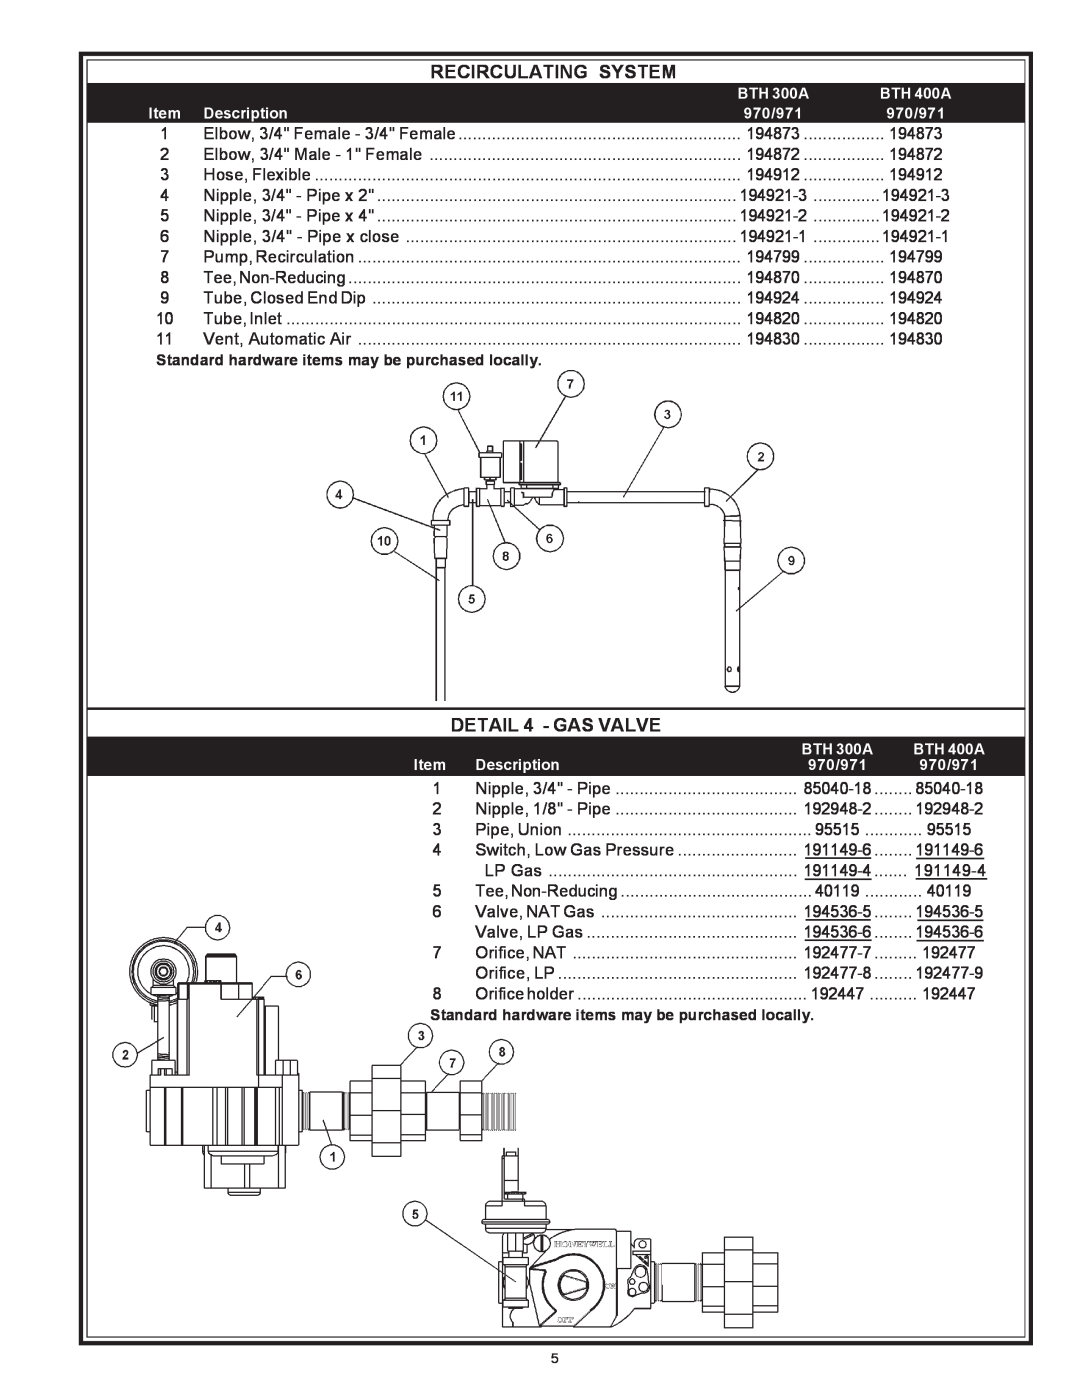 A.O. Smith 970 Series manual Recirculating System, DETAIL 4 - GAS VALVE, BTH 300A, BTH 400A, Description, 970/971 